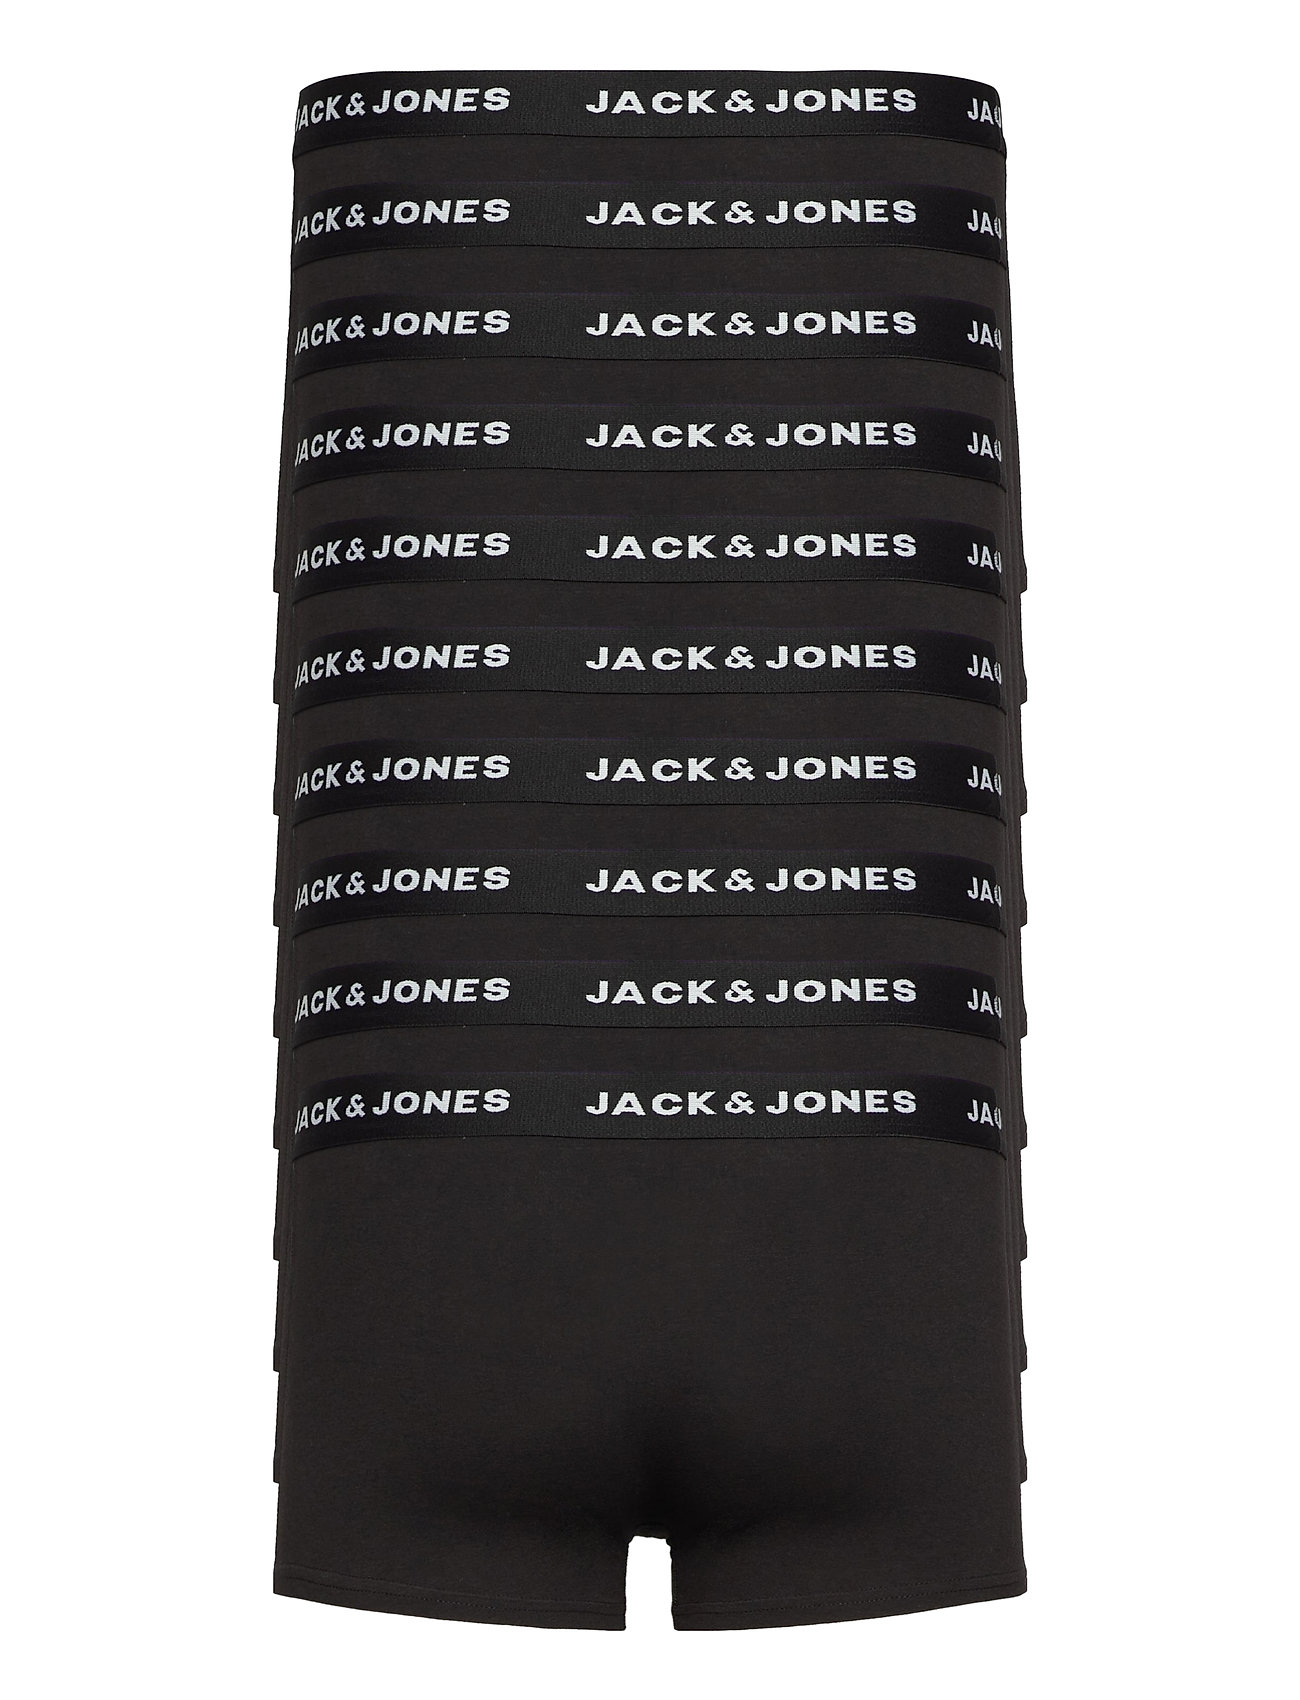 Jack & Jones - JACSOLID TRUNKS 10 PACKS NOOS - boxerkalsonger - black - 1